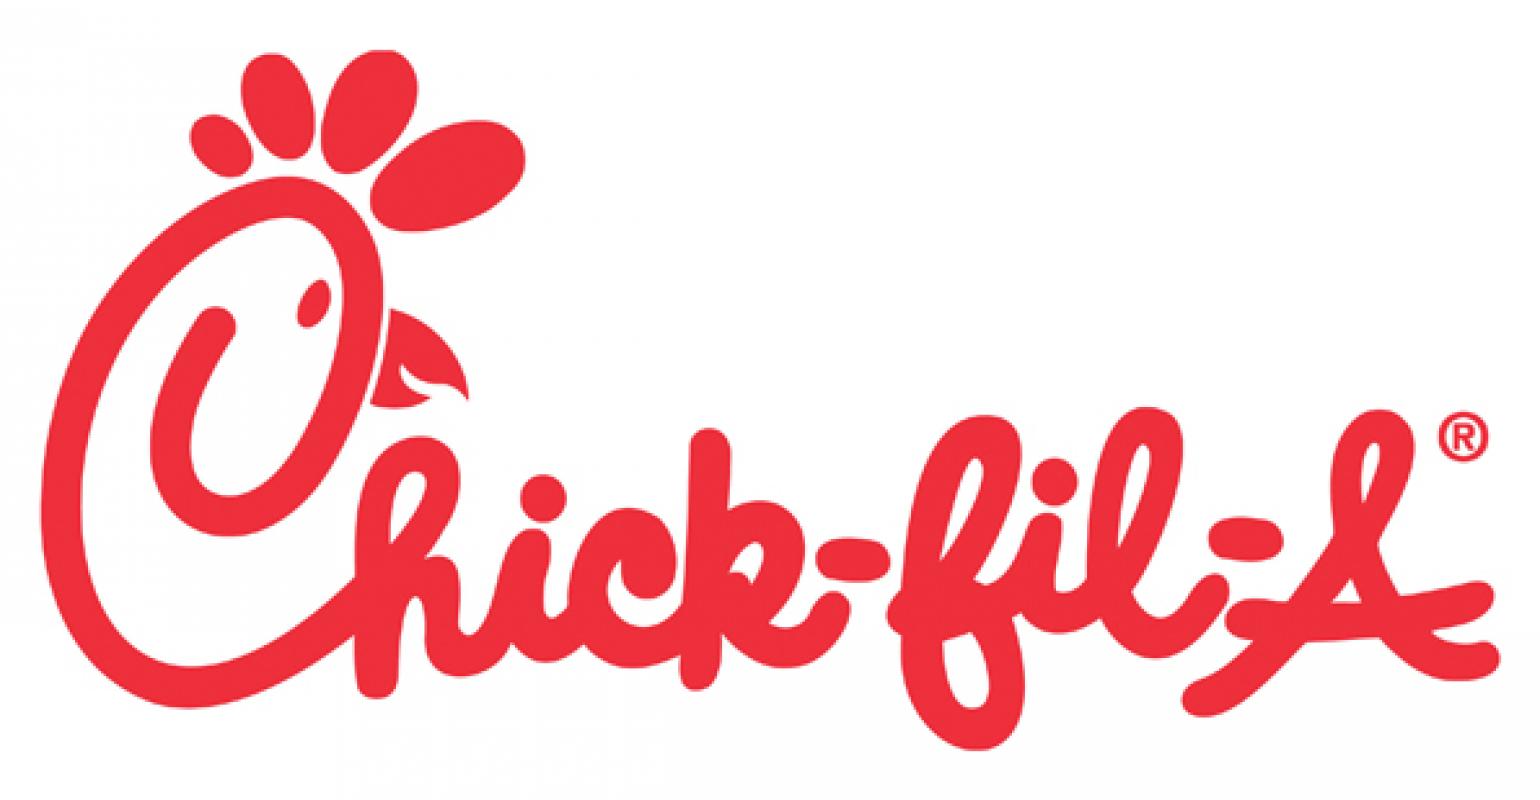 ChickfilA to offer antibioticfree chicken Nation's Restaurant News